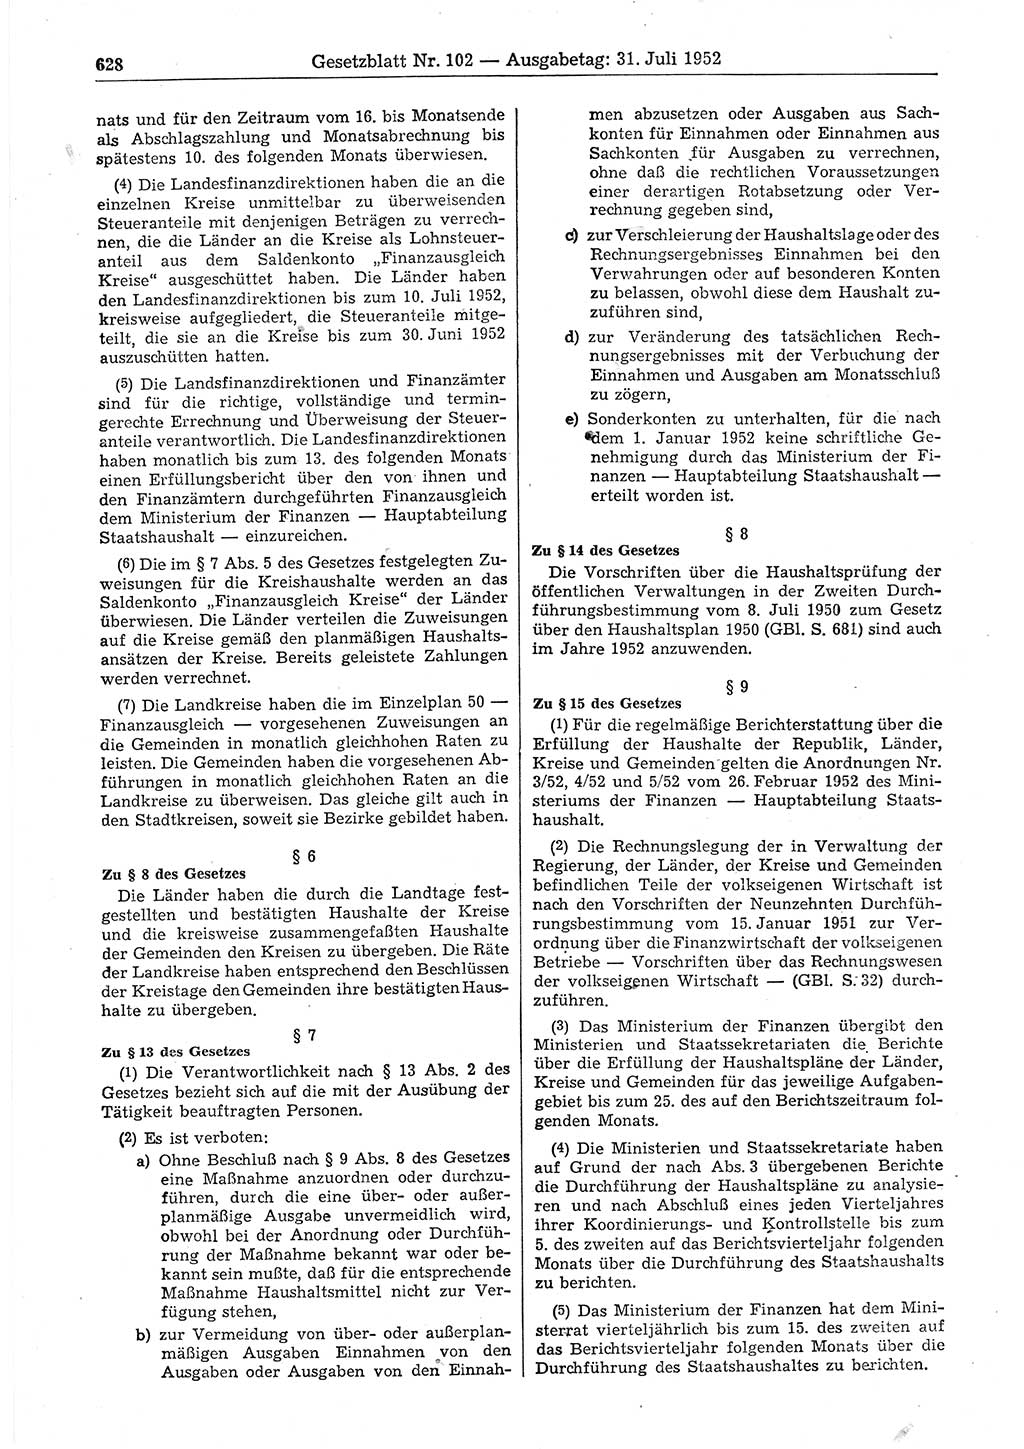 Gesetzblatt (GBl.) der Deutschen Demokratischen Republik (DDR) 1952, Seite 628 (GBl. DDR 1952, S. 628)